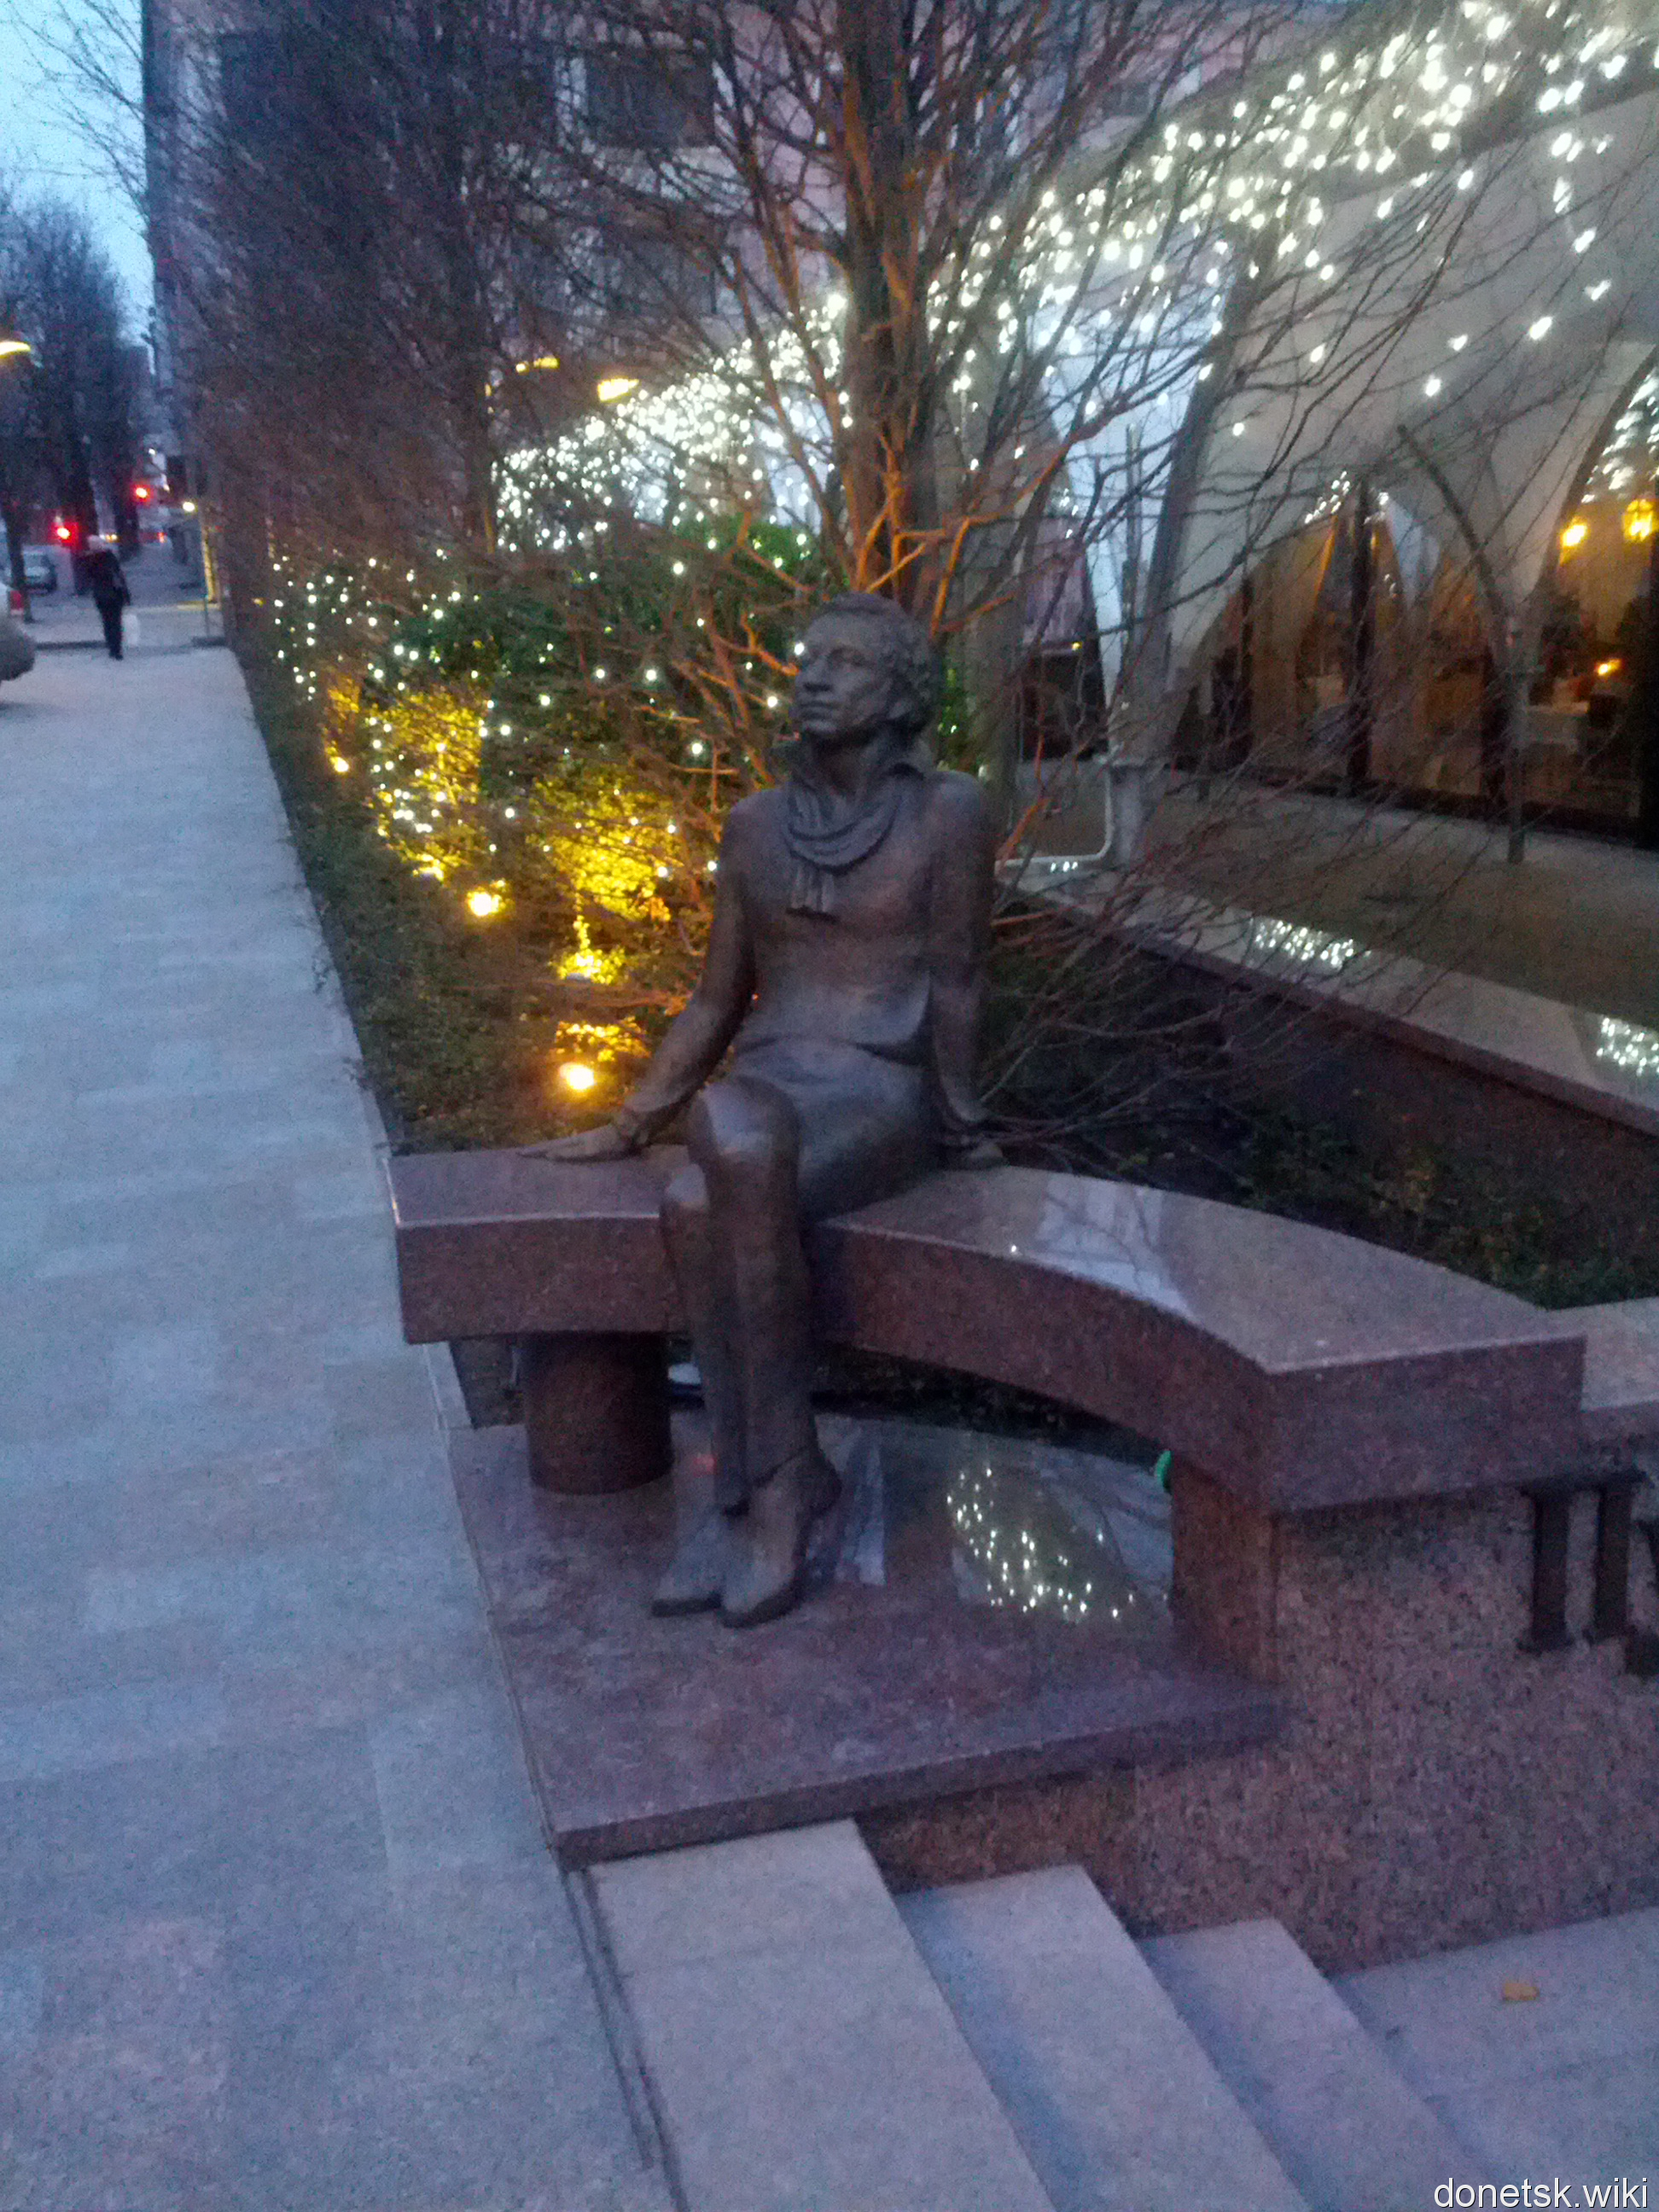 Памятник Пушкину на бульваре Пушкина